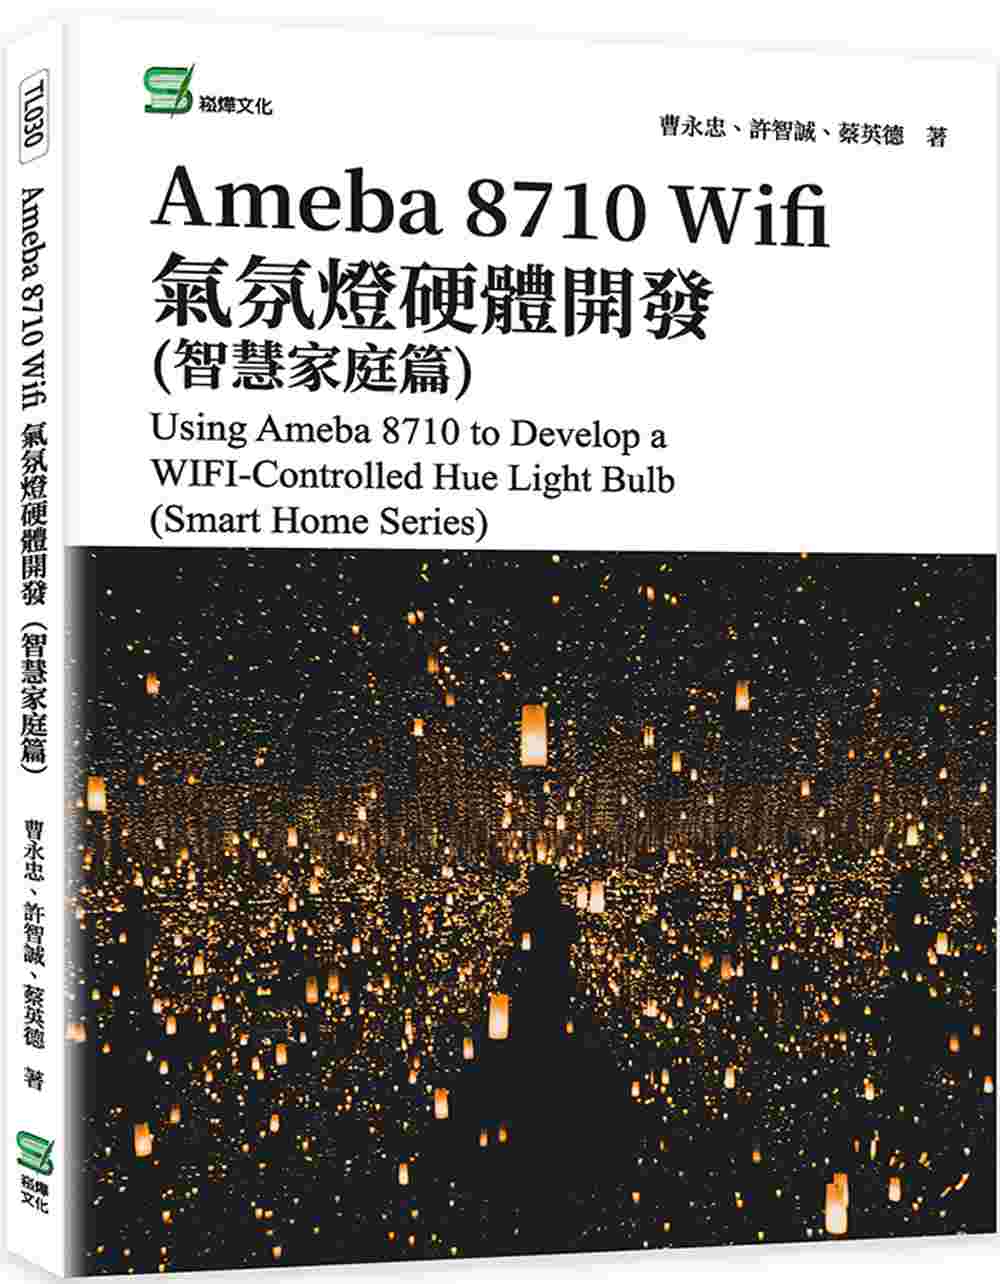 Ameba 8710 Wifi氣氛燈硬體開發(智慧家庭篇)